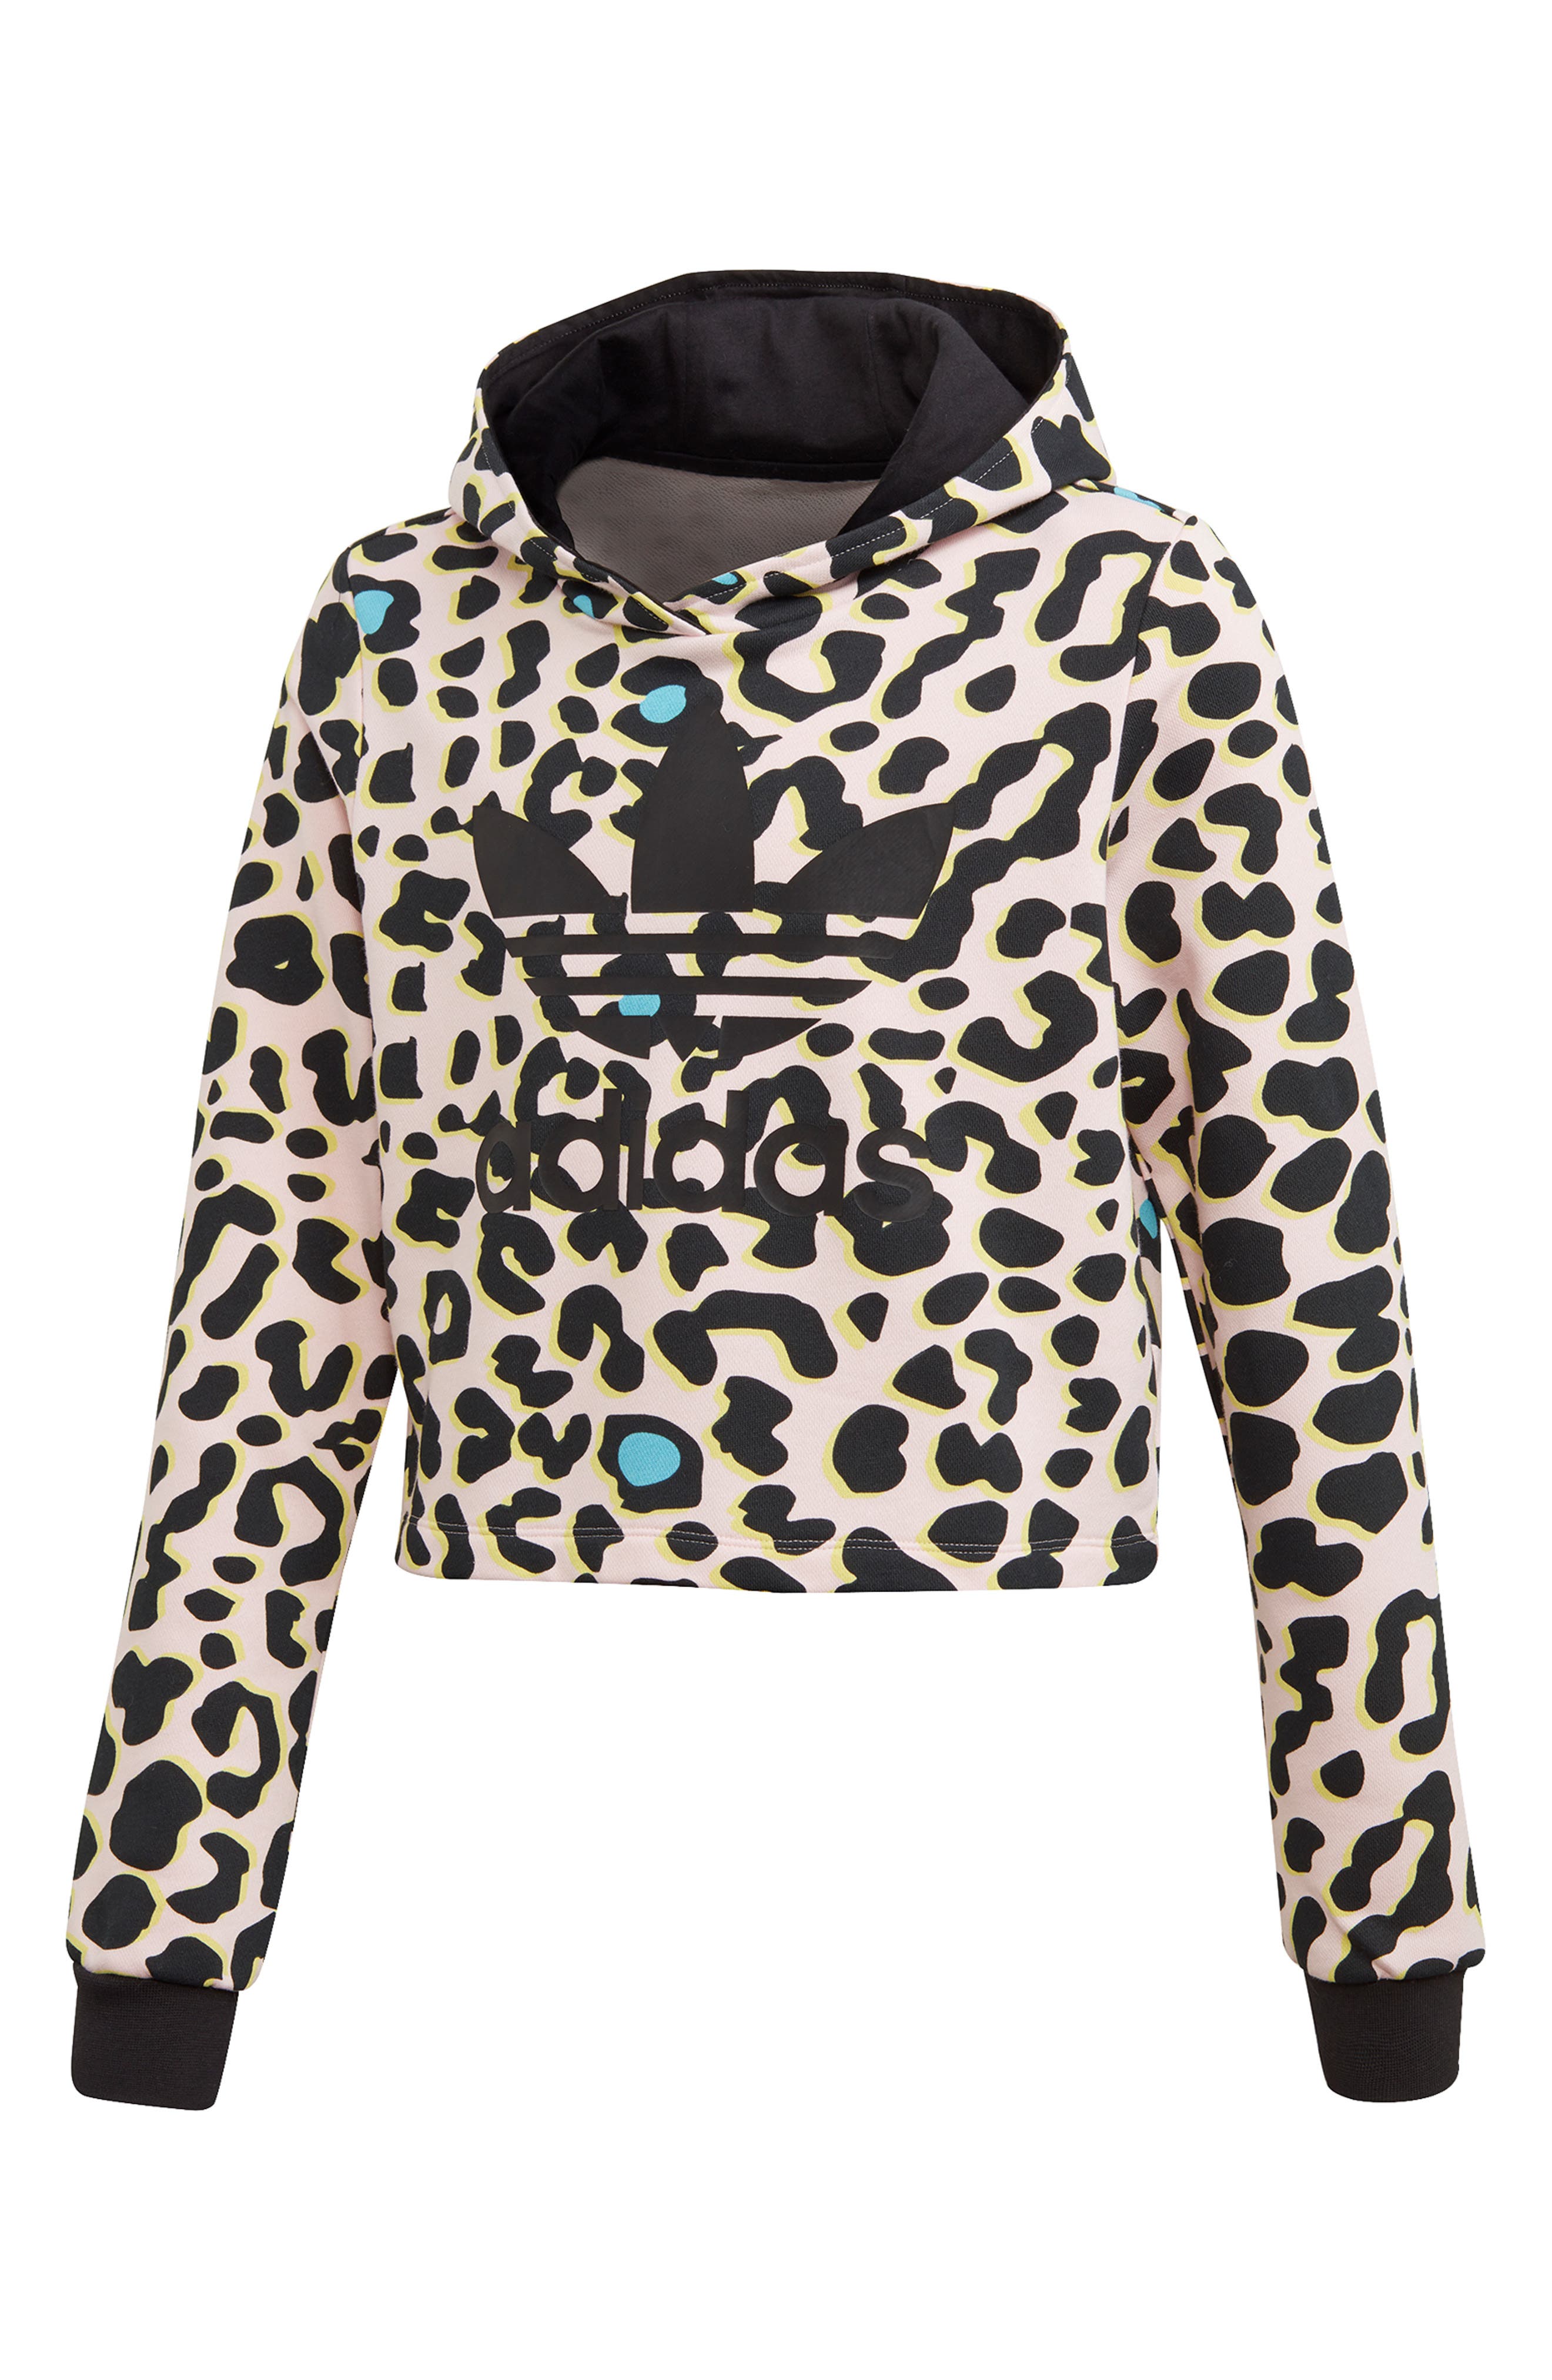 adidas hoodie leopard print